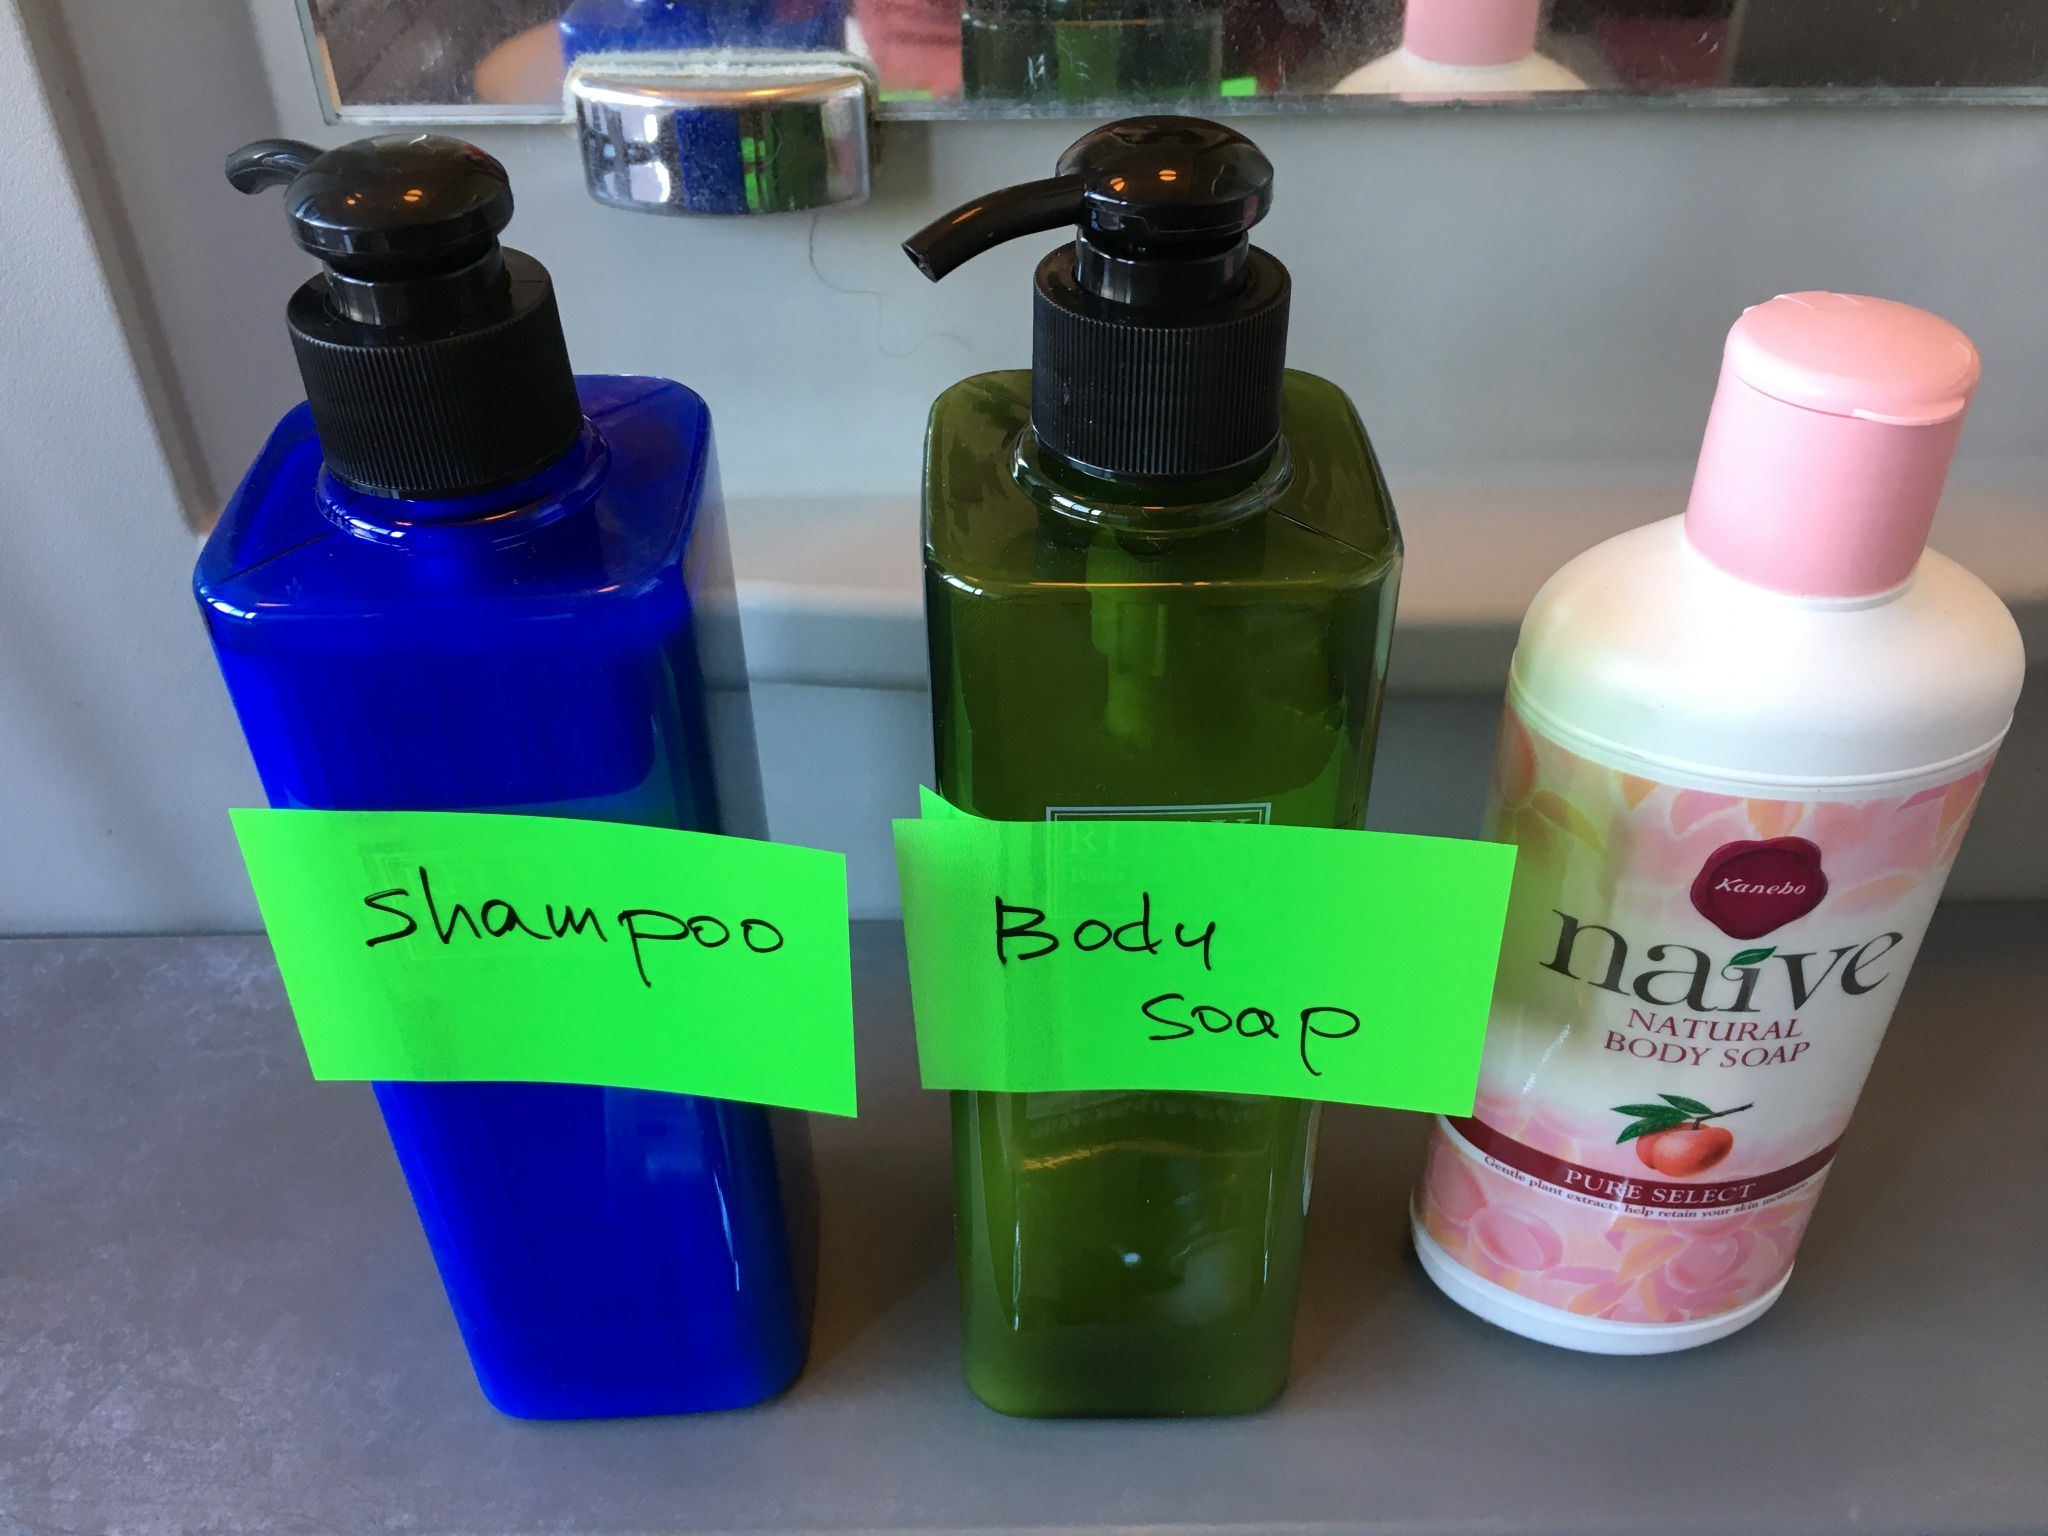 Shampoo and Body soap